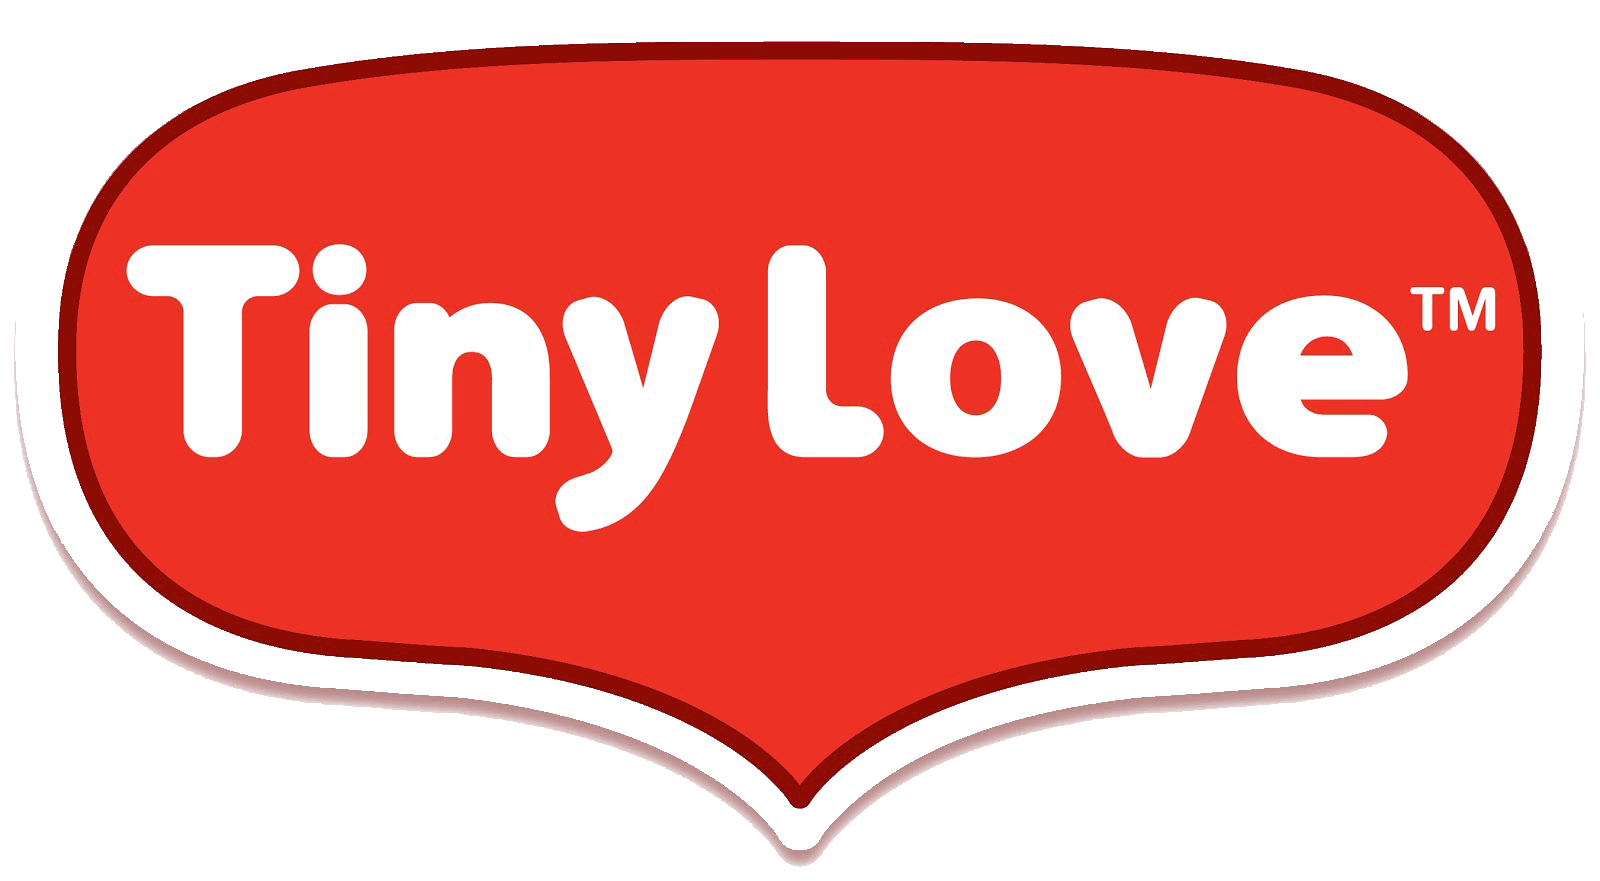 logo tiny love